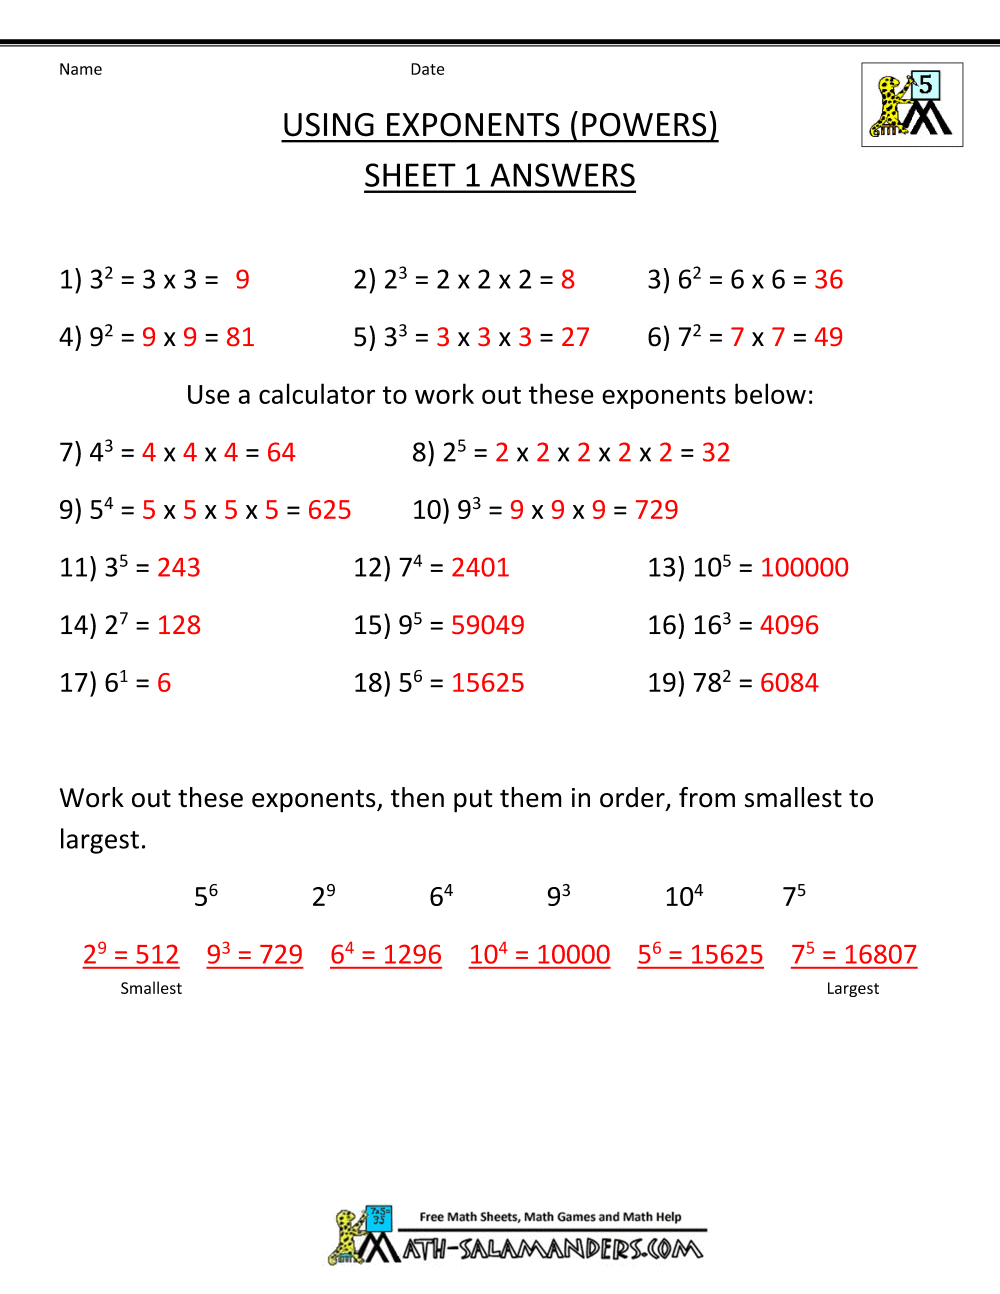 Math Worksheets 5th Grade Complex Calculations